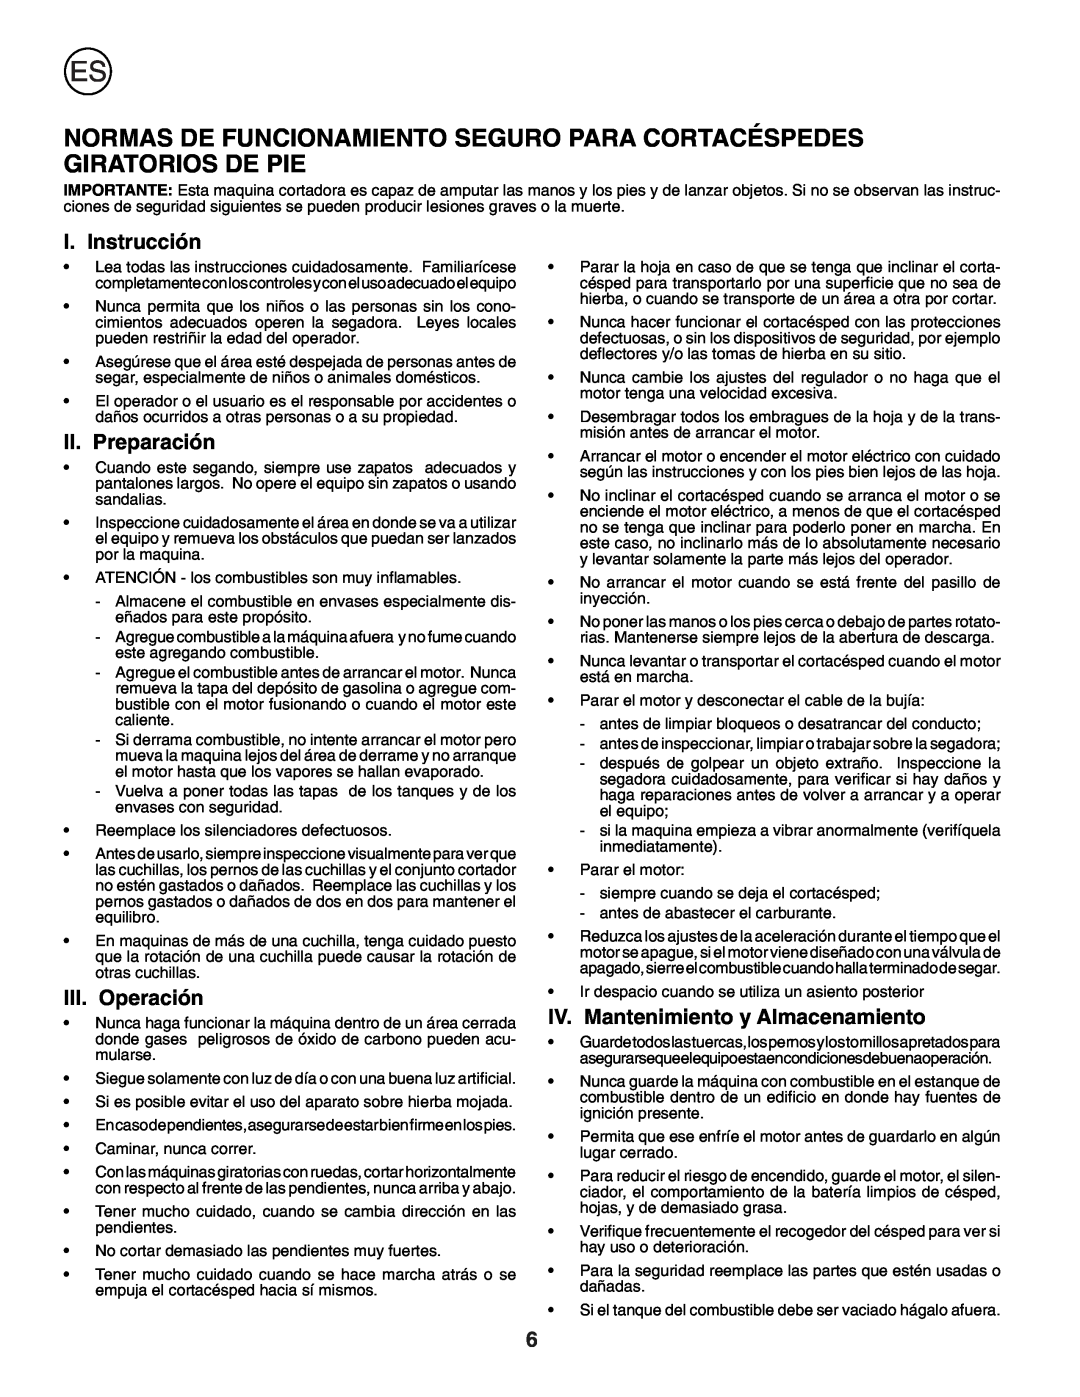 Husqvarna J50R instruction manual I. Instrucción, II. Preparación, III. Operación, IV. Mantenimiento y Almacenamiento 